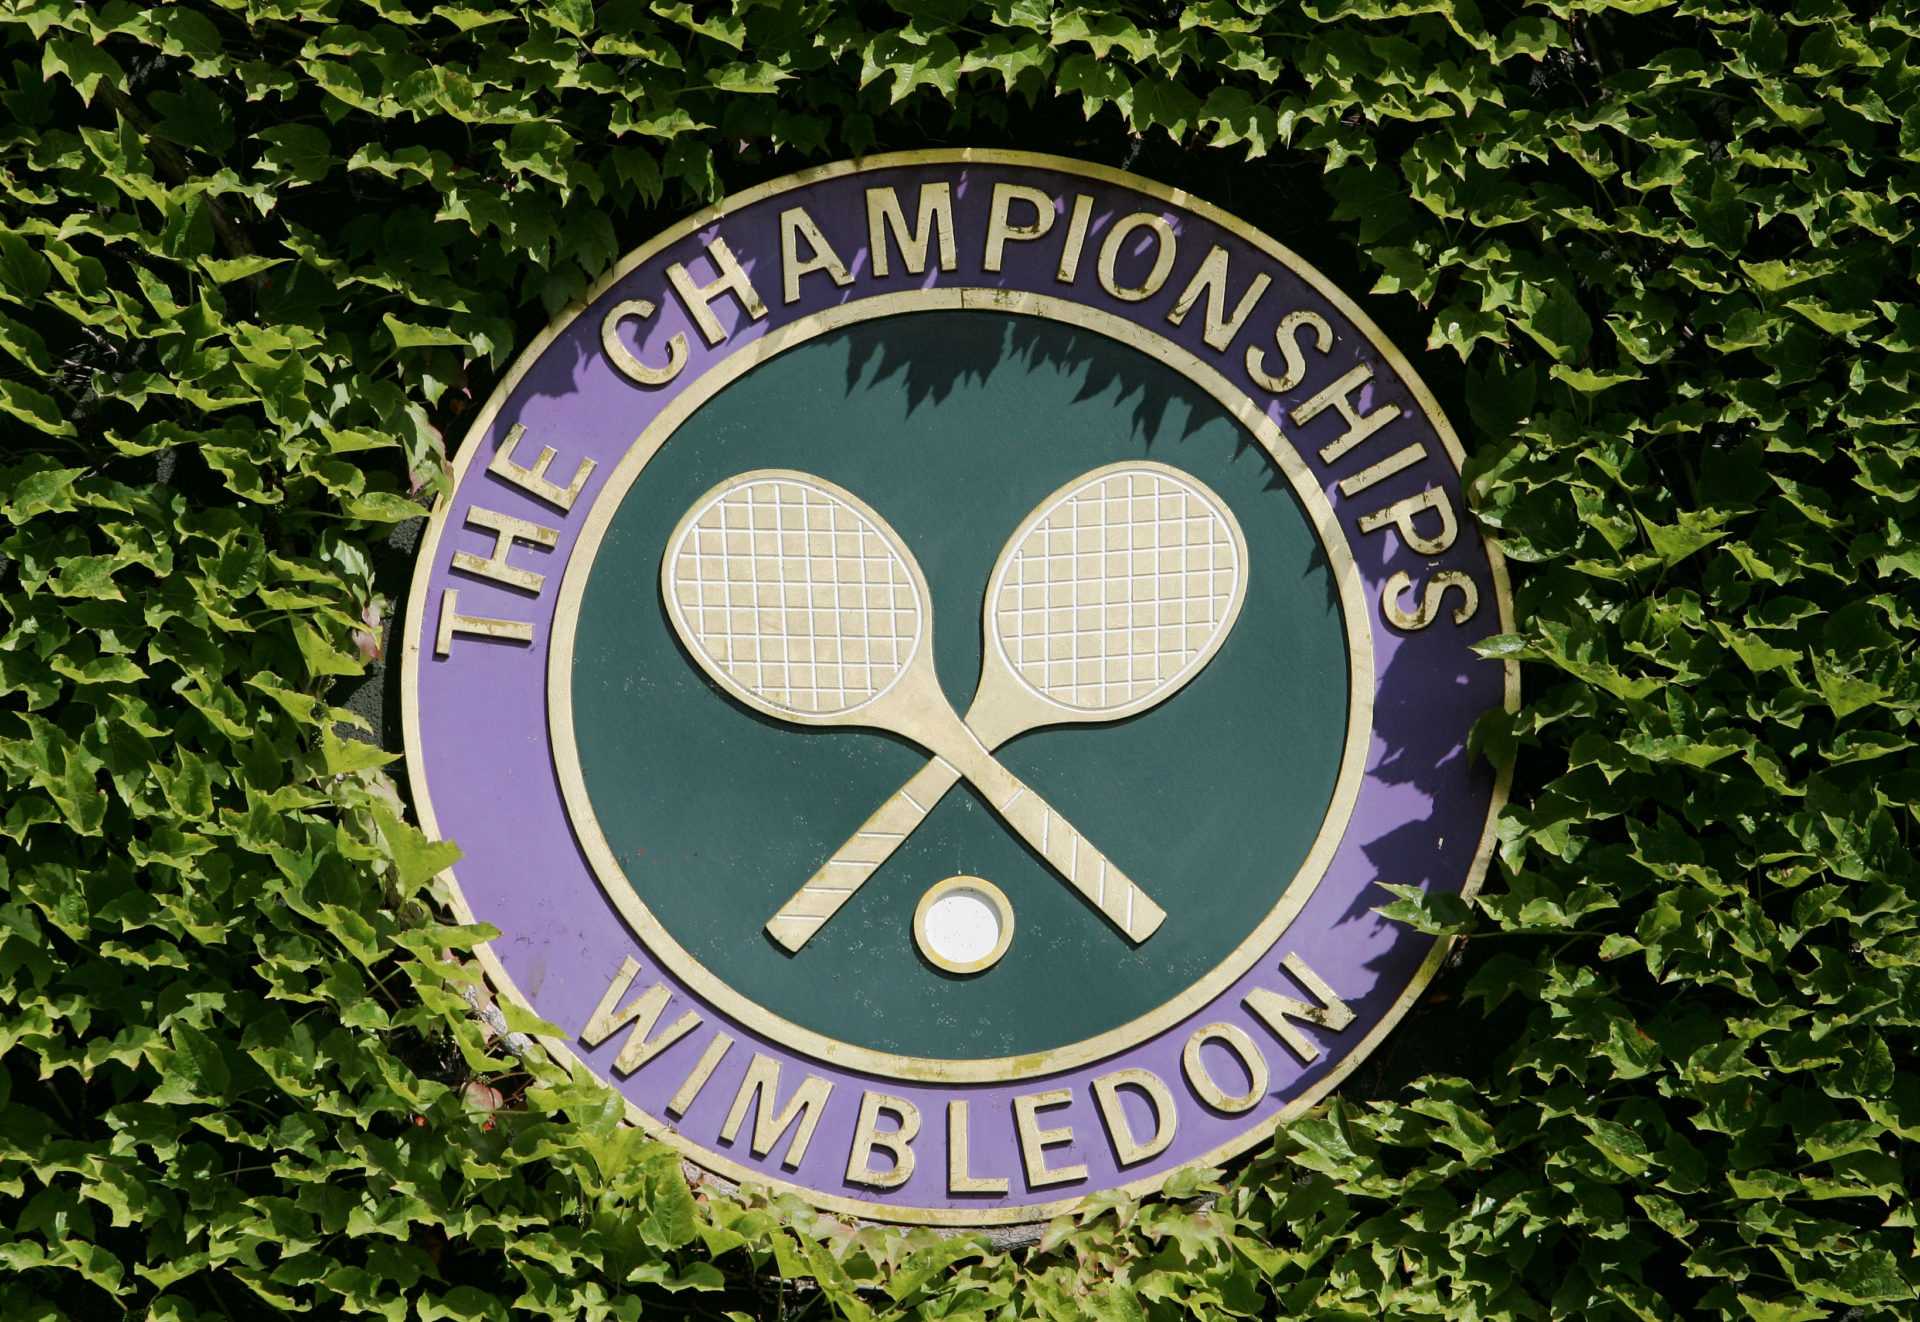 Les championnats de Wimbledon 2021 révèlent des protocoles COVID-19 stricts susceptibles d'attirer des réactions négatives